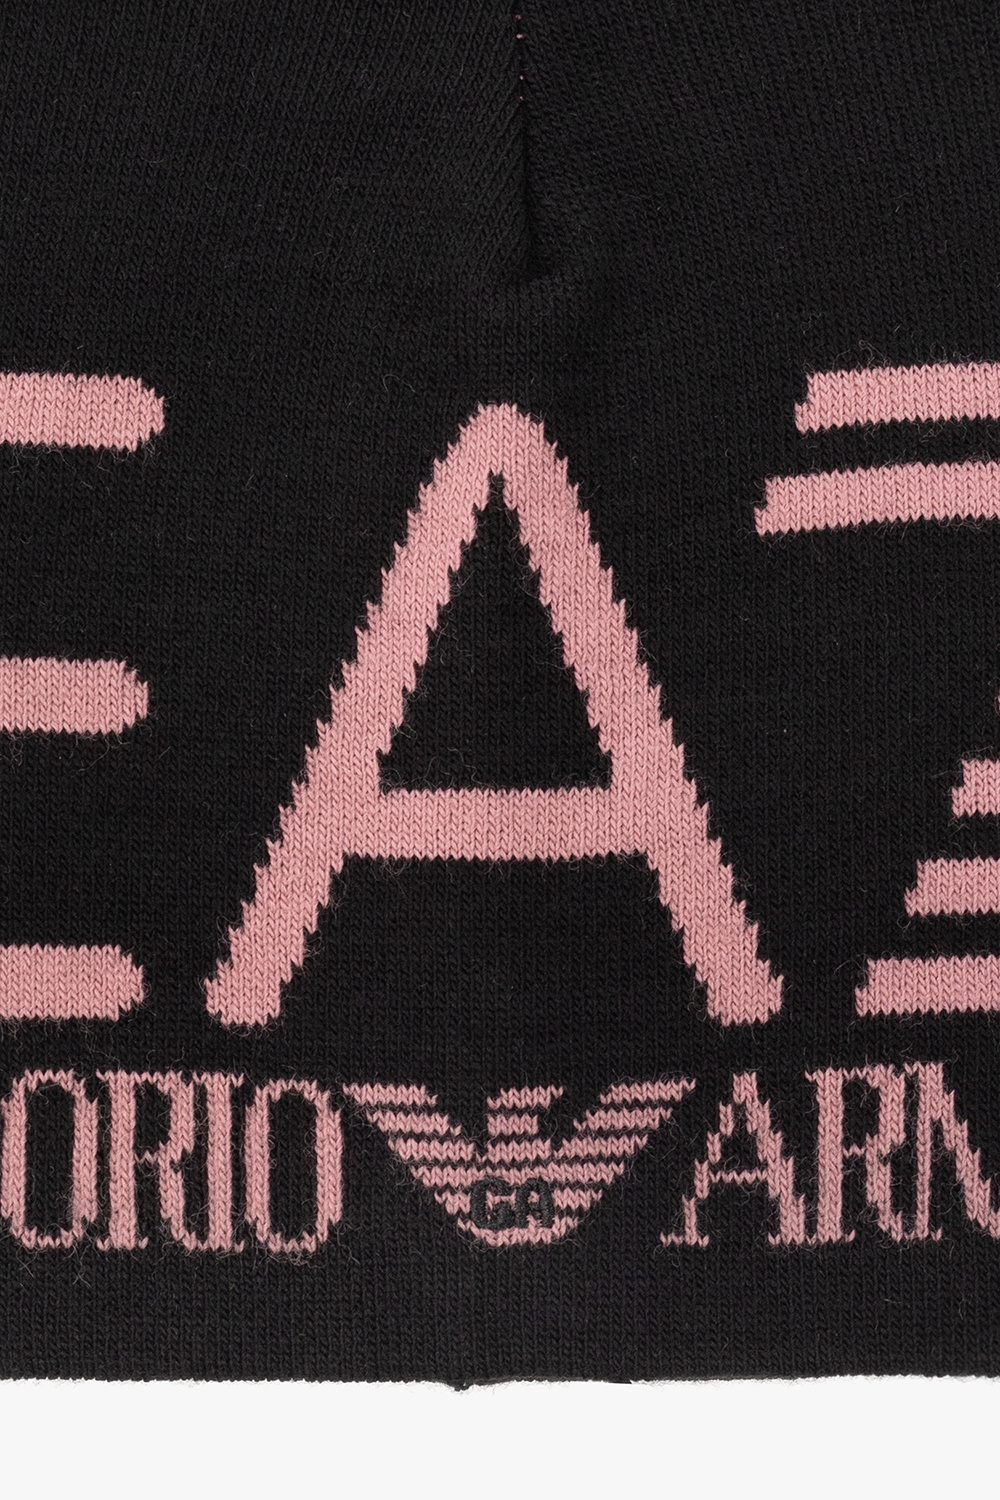 EA7 Emporio scapa armani Beanie with logo